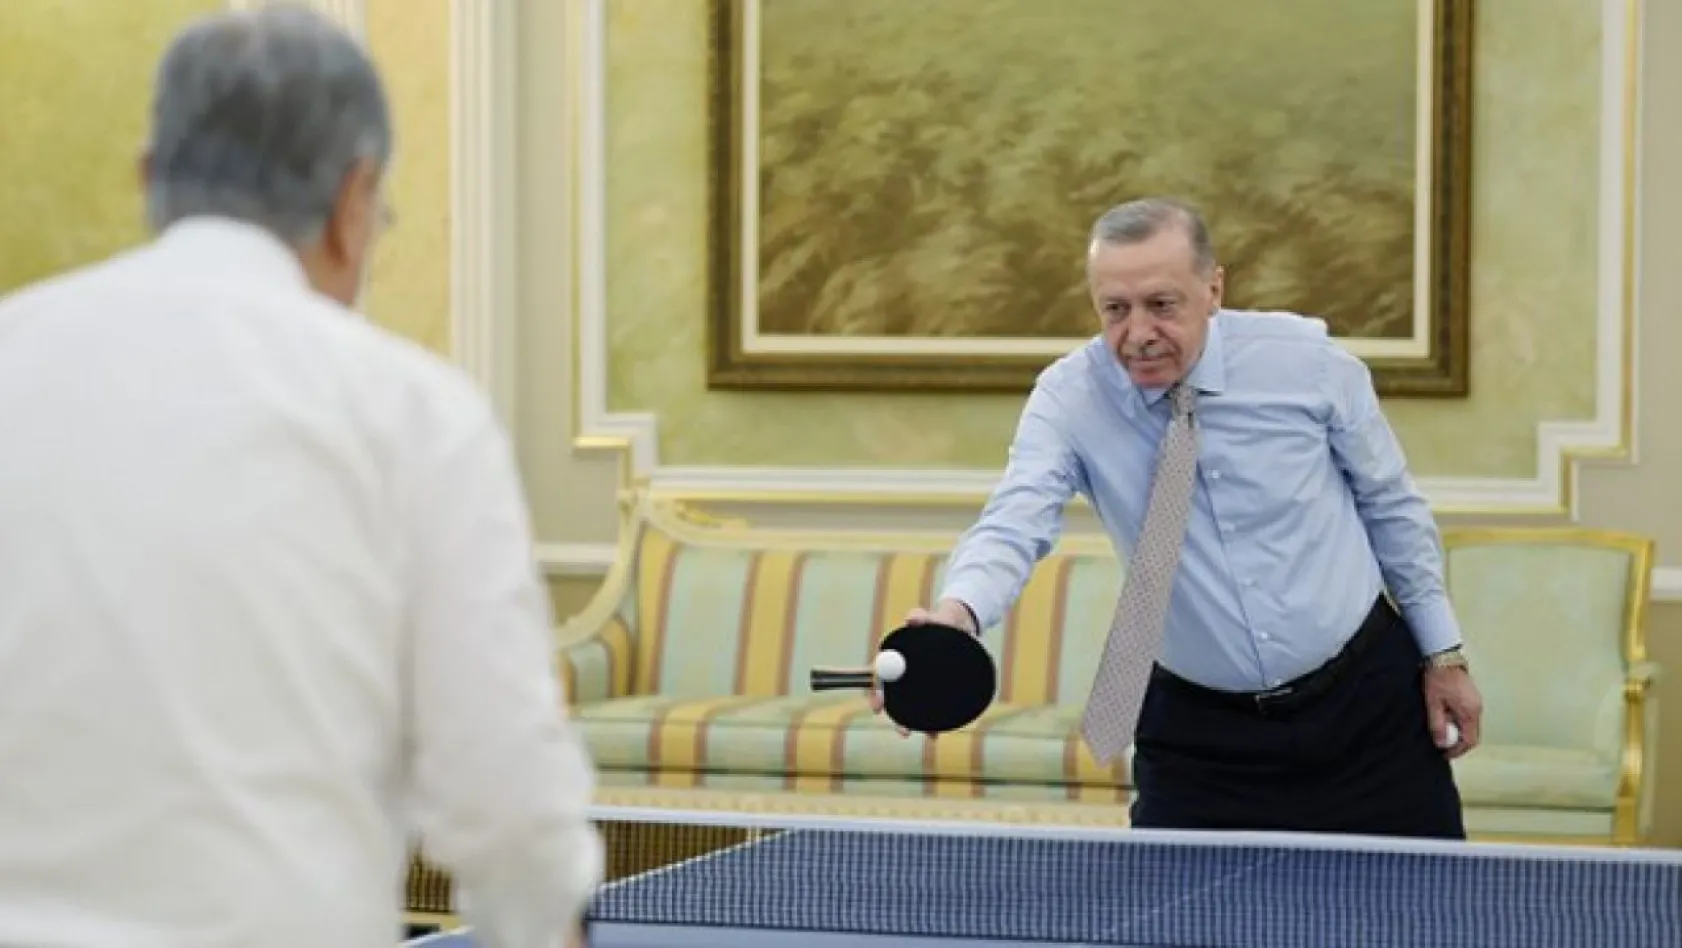 Cumhurbaşkanı Erdoğan ile Tokayev masa tenisi oynadı